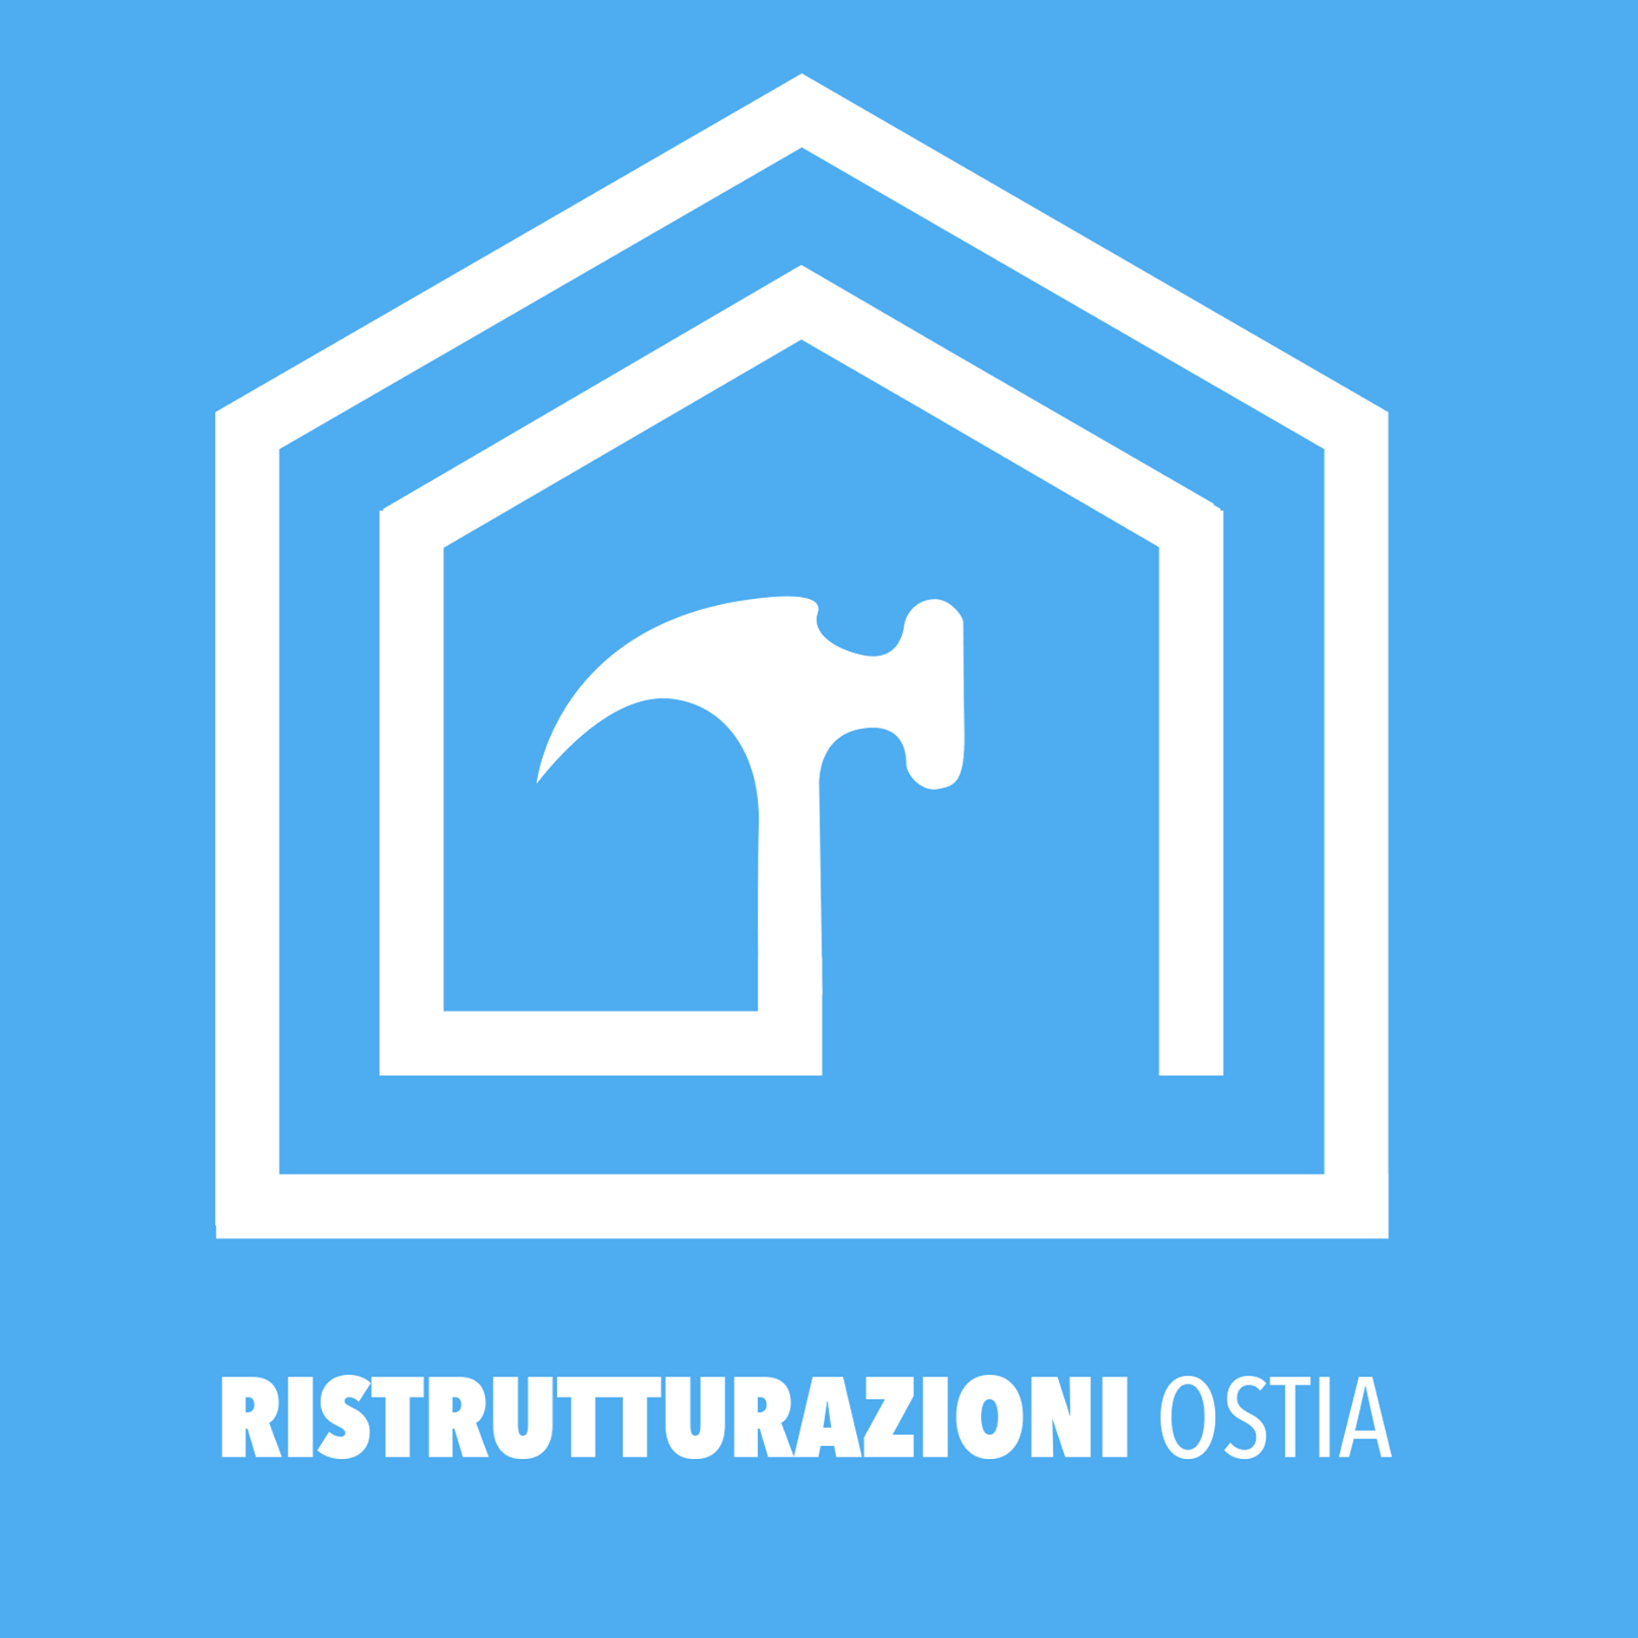 Ristrutturazioni Ostia - logo